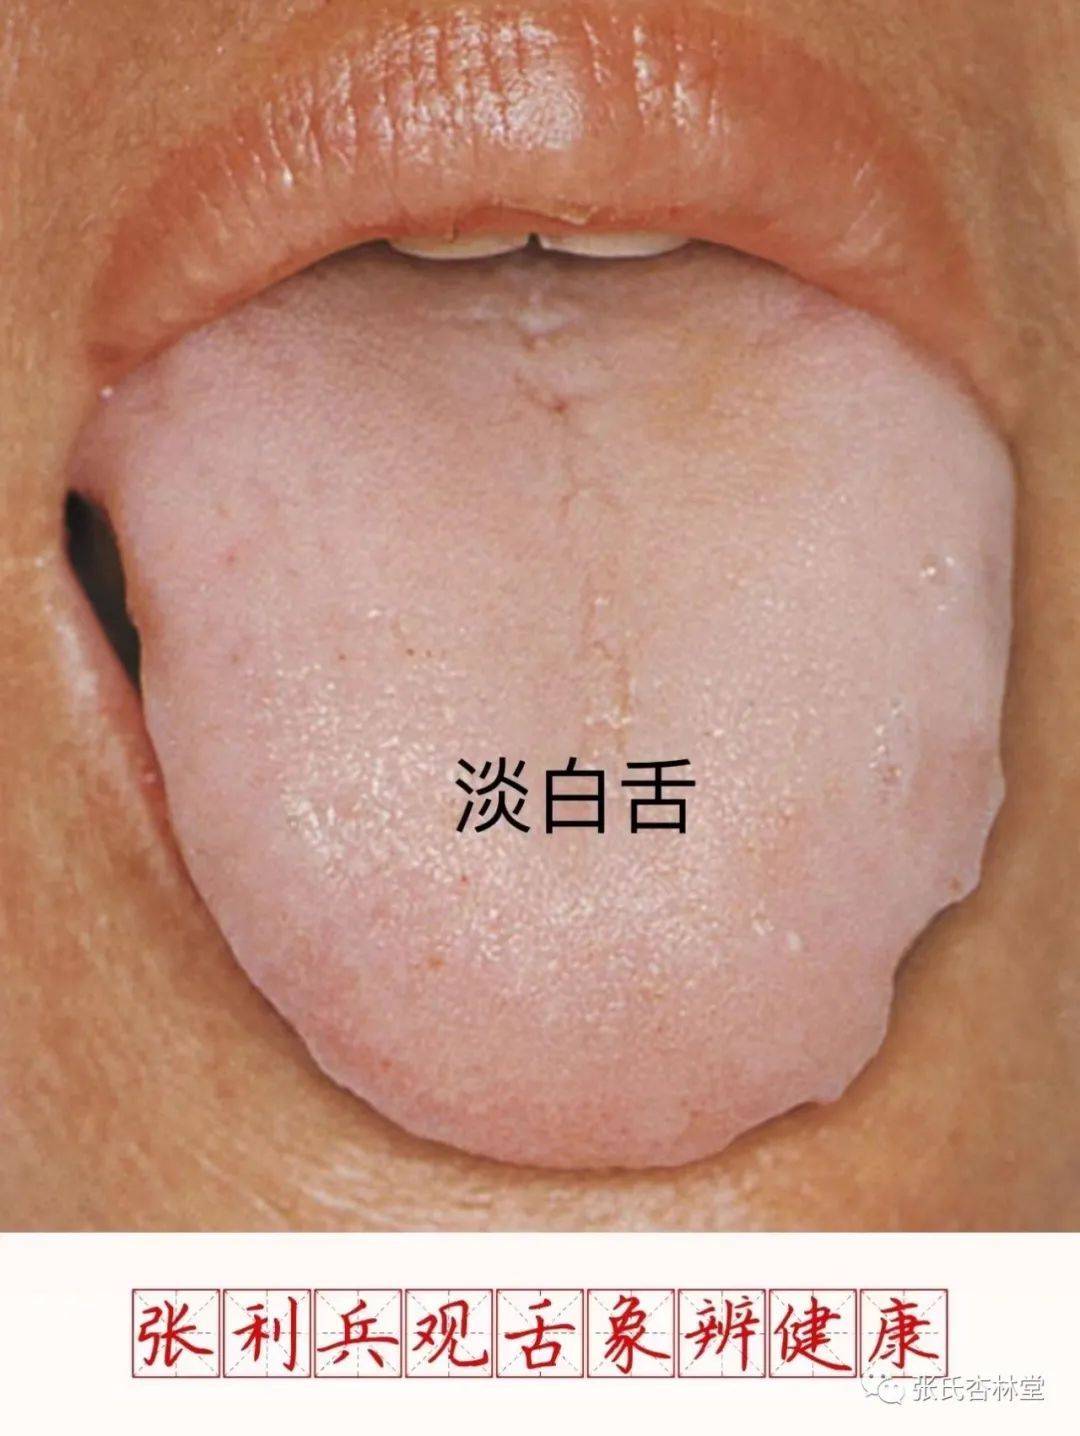 即象有过剩的水分浸渗于舌底之下,一般伴见滑腻苔,或者是舌边有齿痕